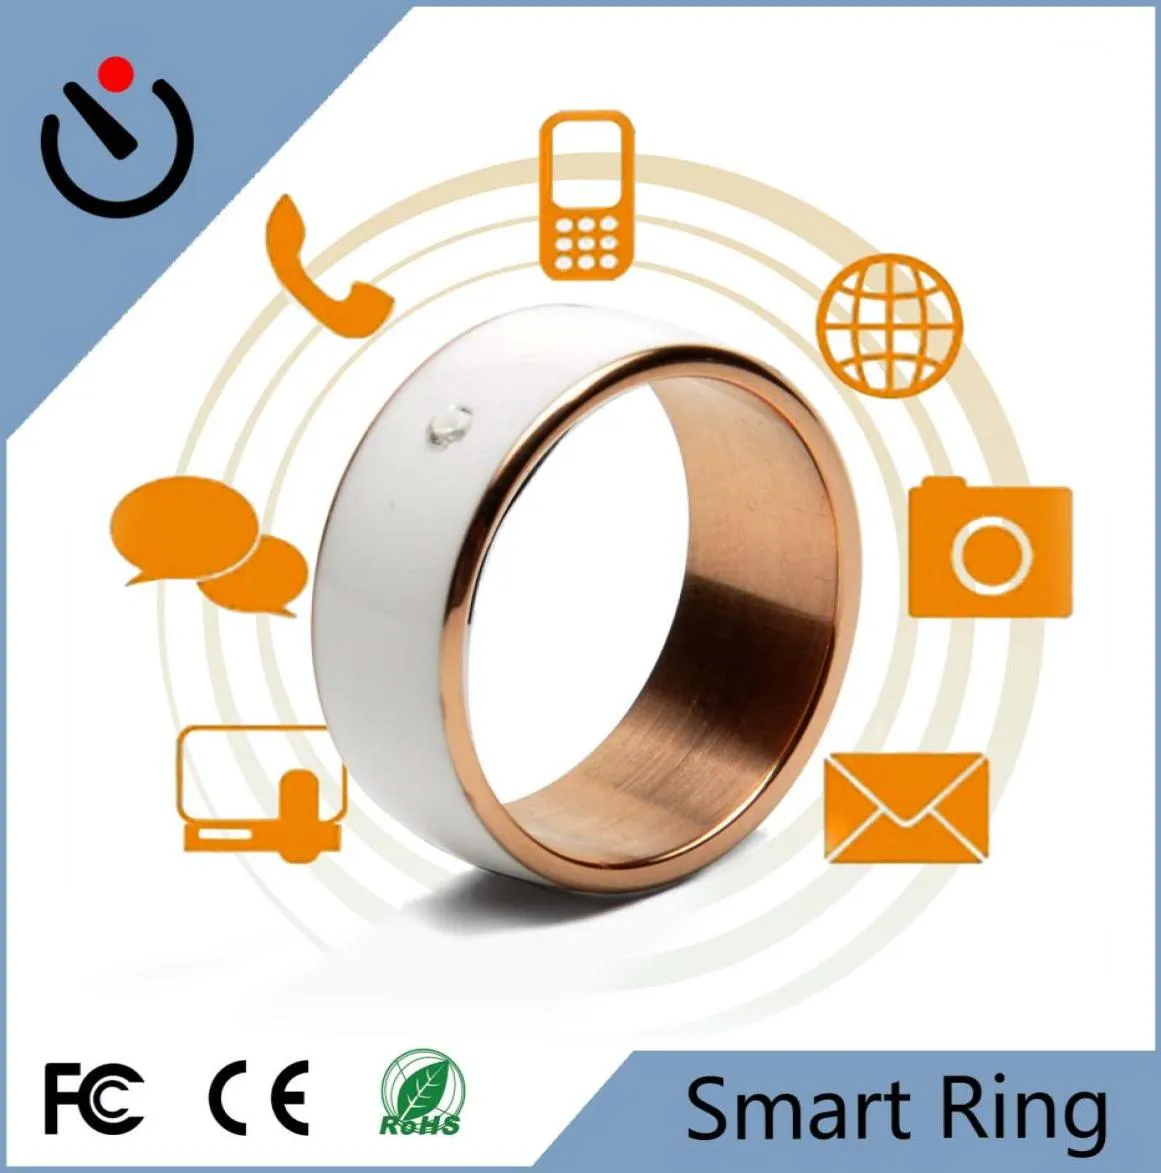 스마트 링 NFC 안드로이드 WP 스마트 전자 장치 스마트 장치 모바일로서의 지능적인 마법 카마라 탐지기 MP31783238